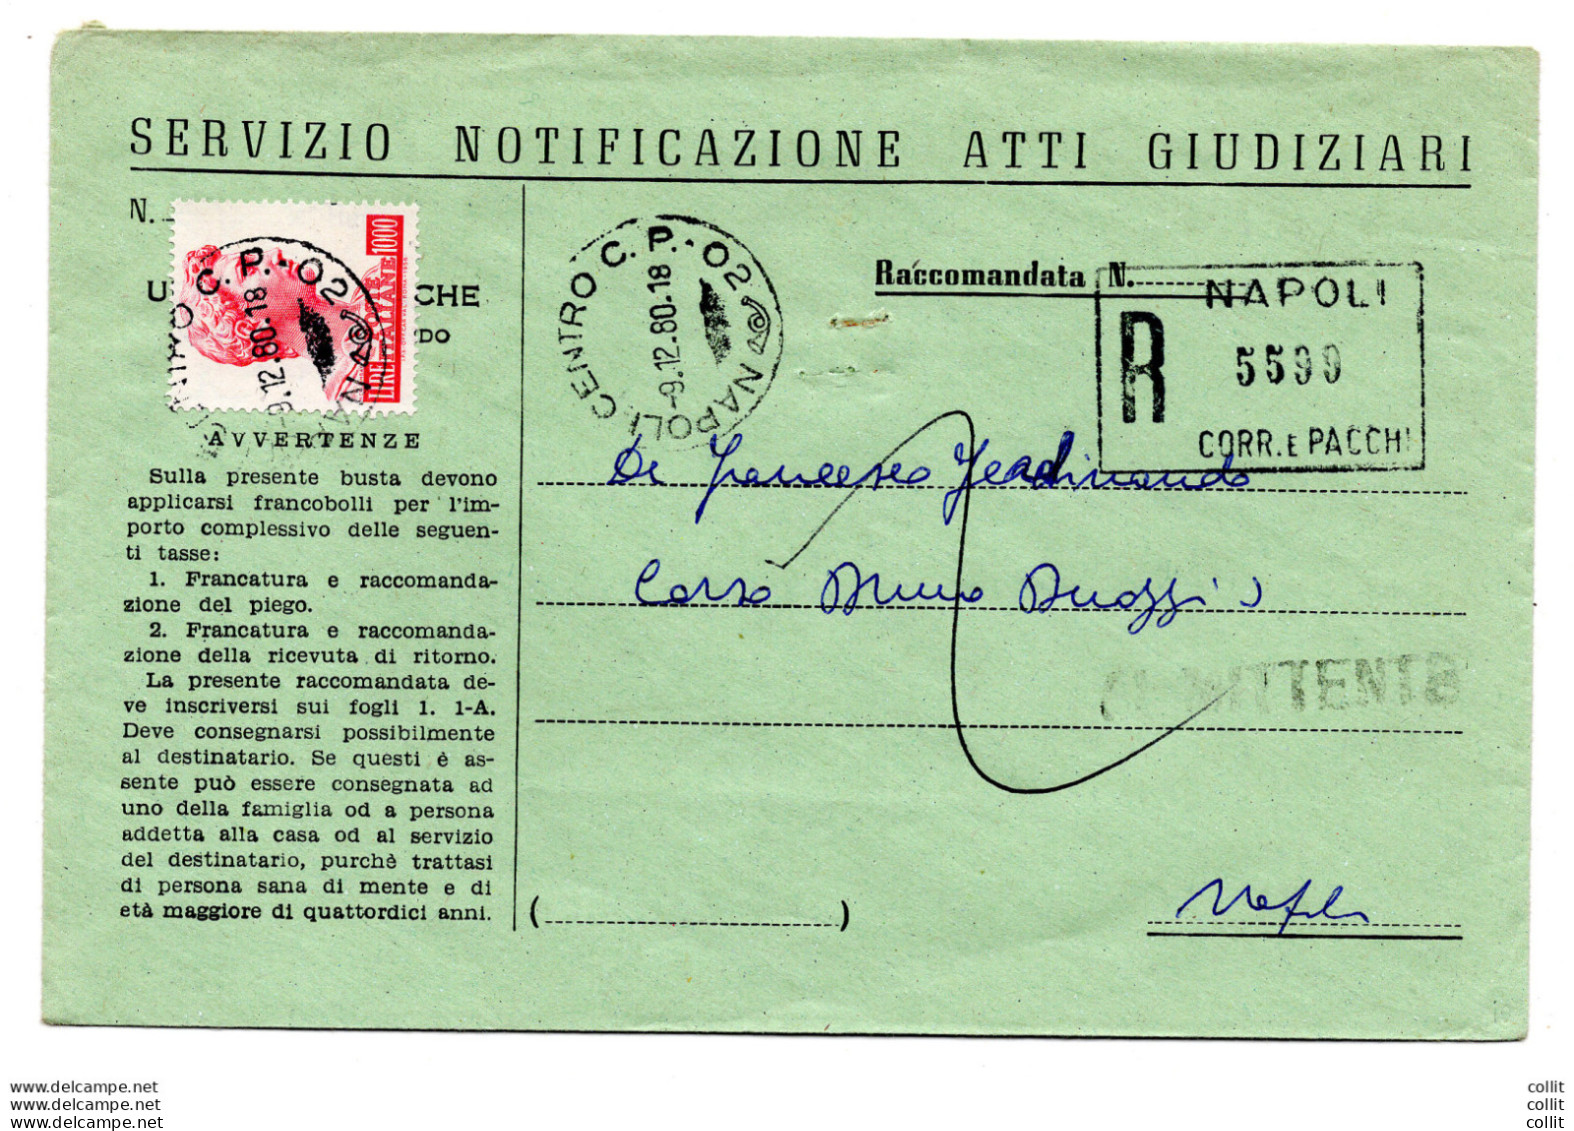 San Giorgio Lire 1.000 Fluorescente Isolato Su Busta Racc. - 1946-60: Marcophilie